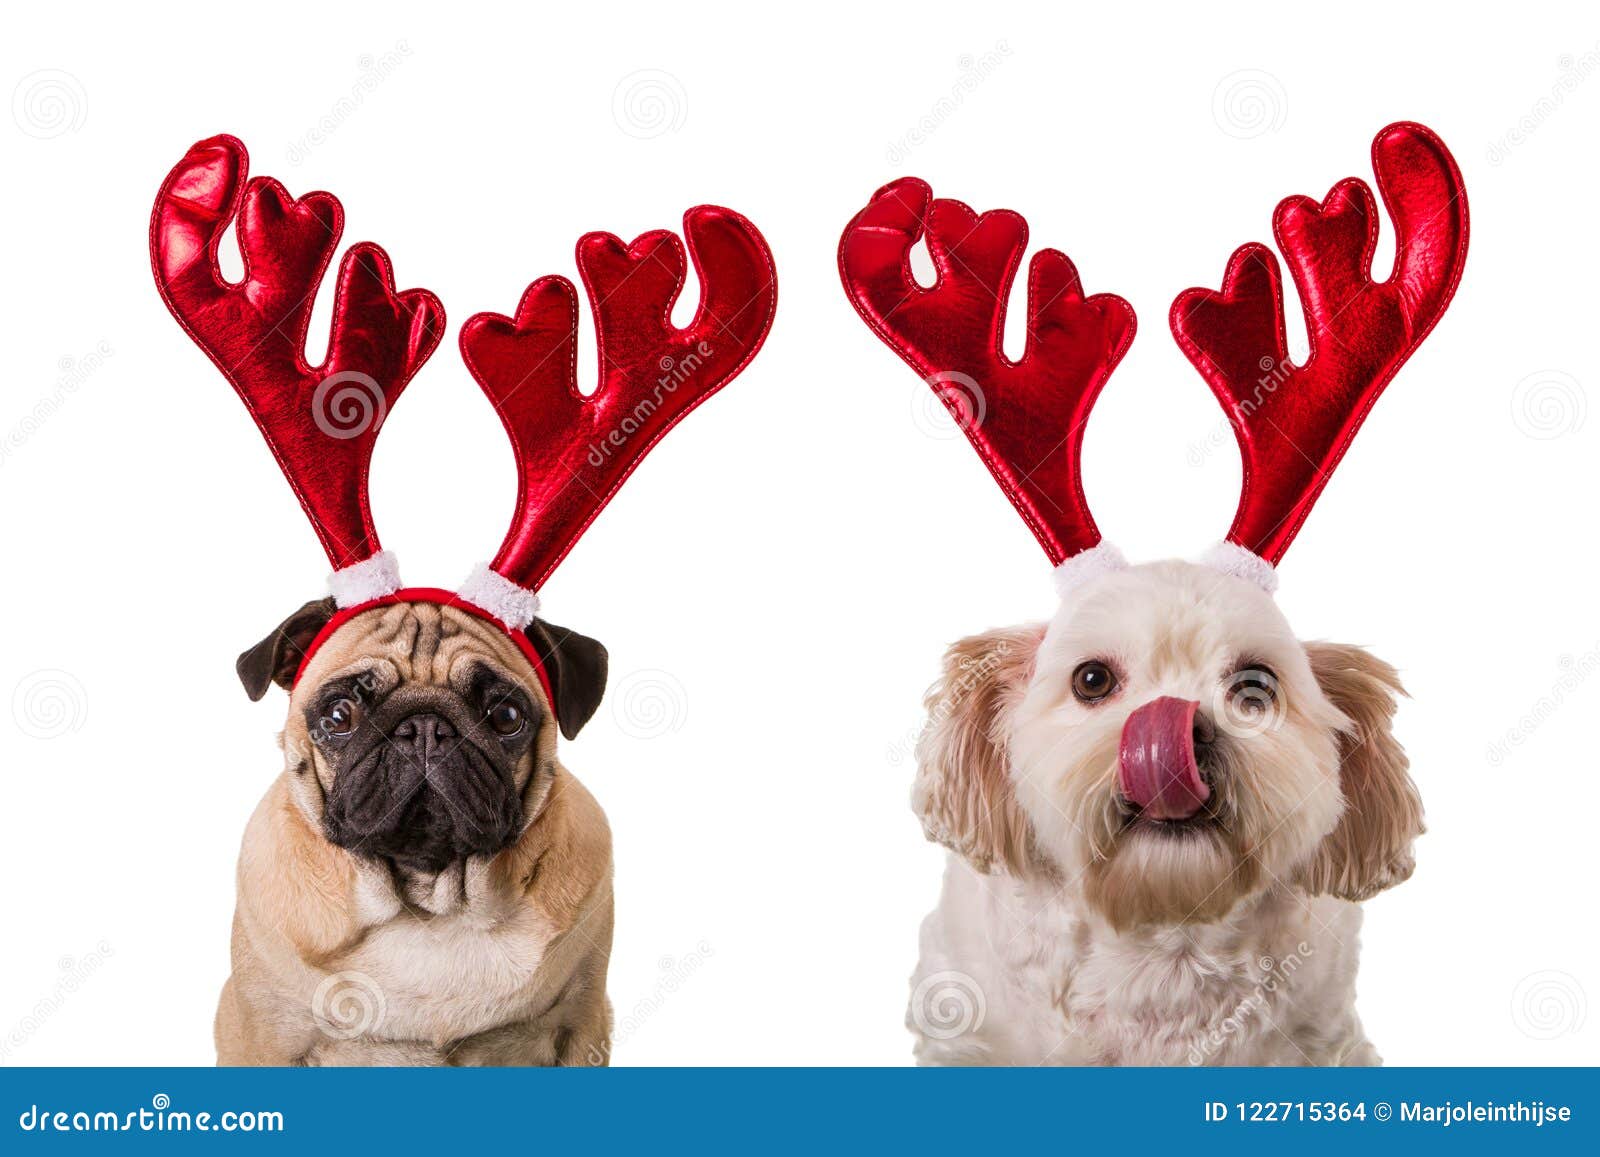 Foto Cani Di Natale.Cani Di Natale Con I Corni Dei Cervi Fotografia Stock Immagine Di Maltese Costume 122715364